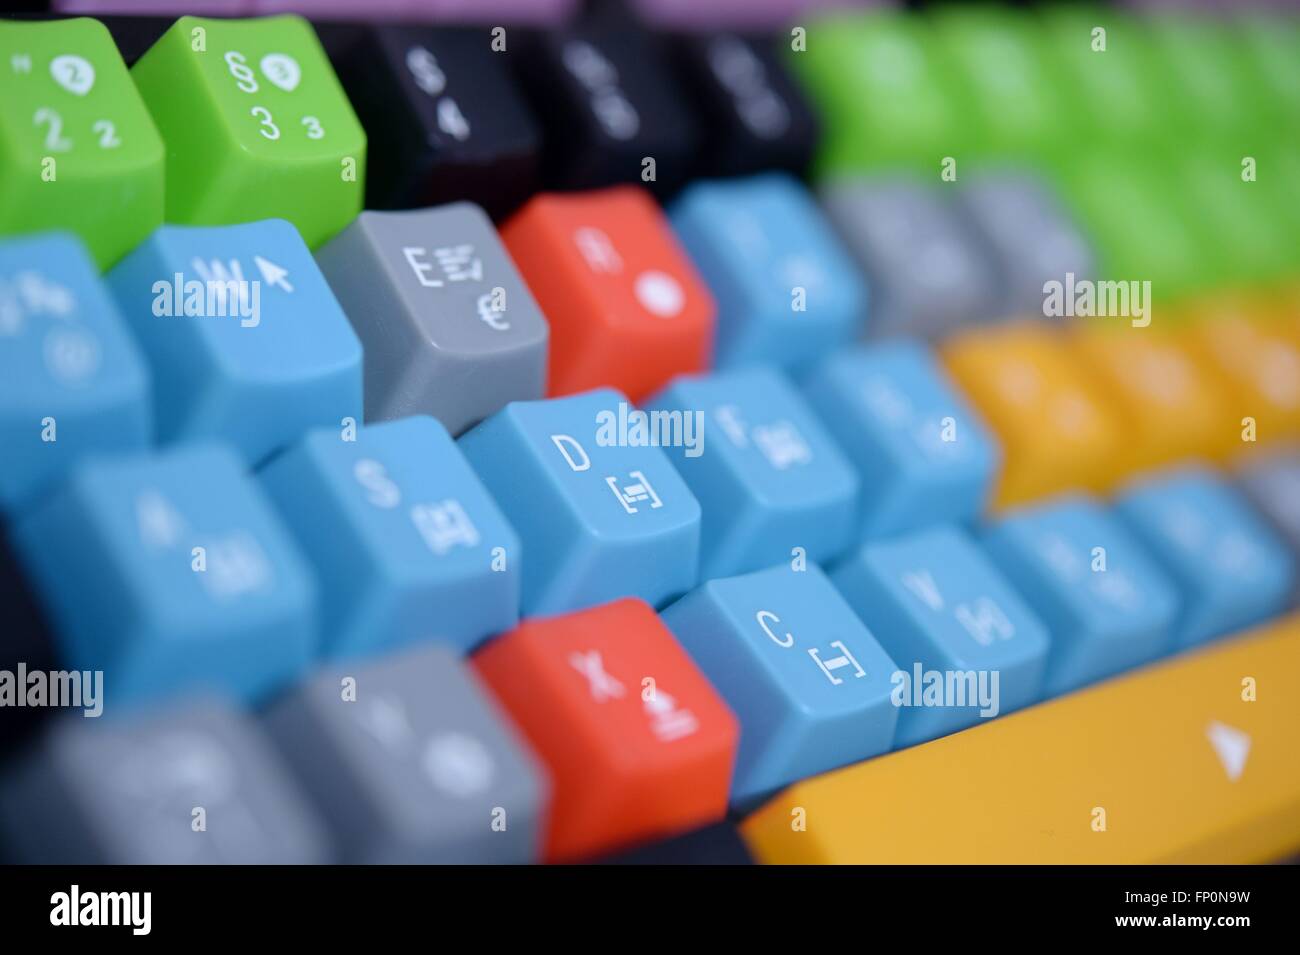 Una colorata della tastiera del computer, in Germania, città di Hannover, 16. Marzo 2016. Foto: Frank può Foto Stock